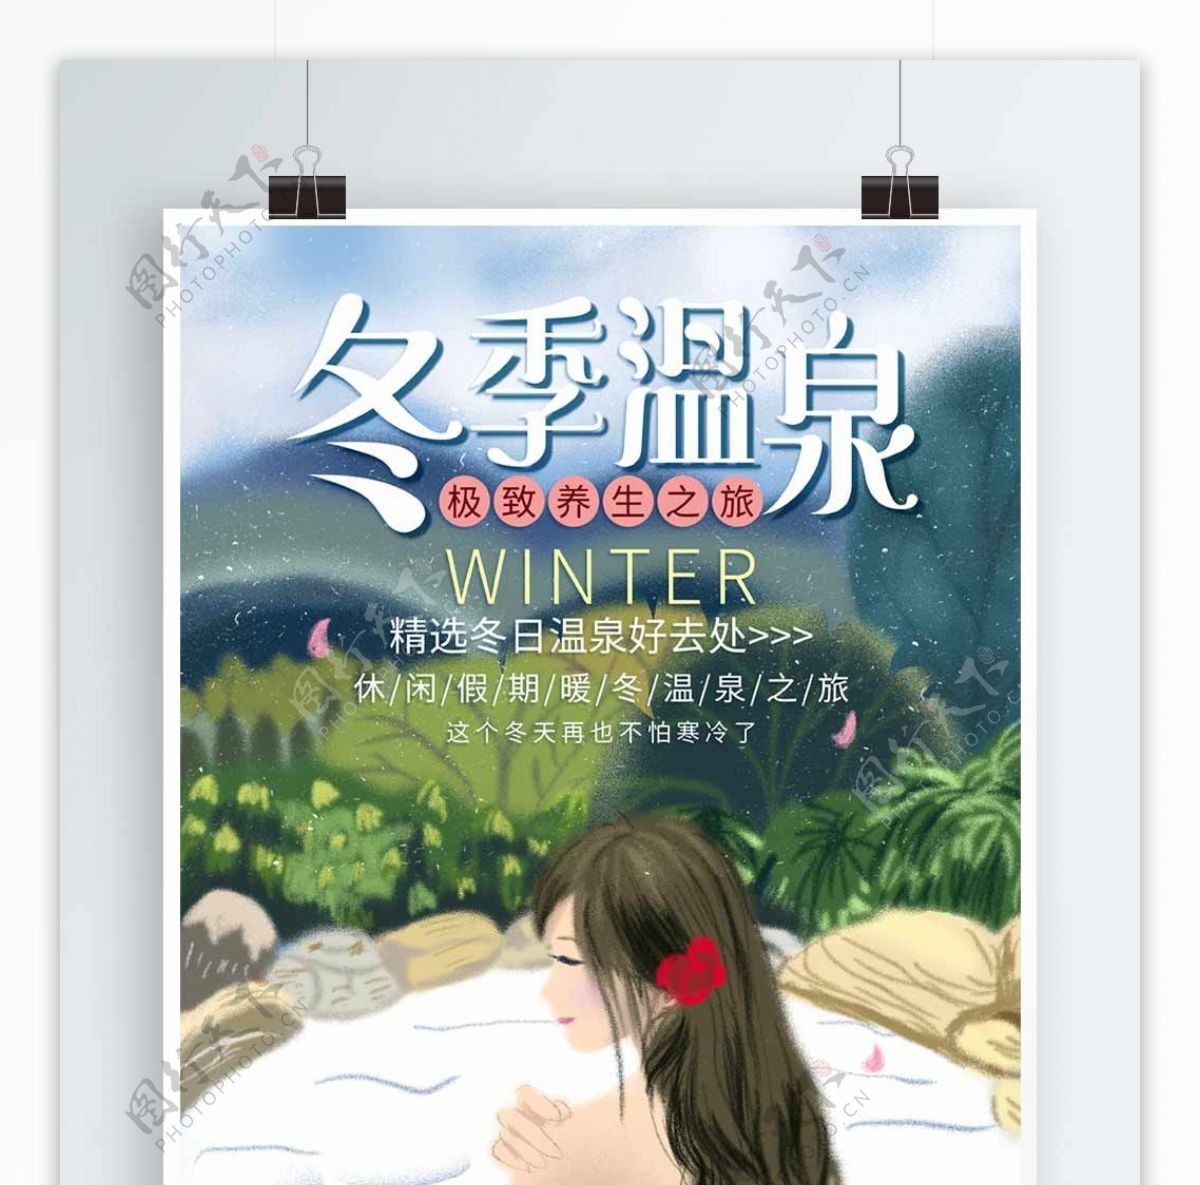 唯美简约冬季冬日温泉促销旅游海报